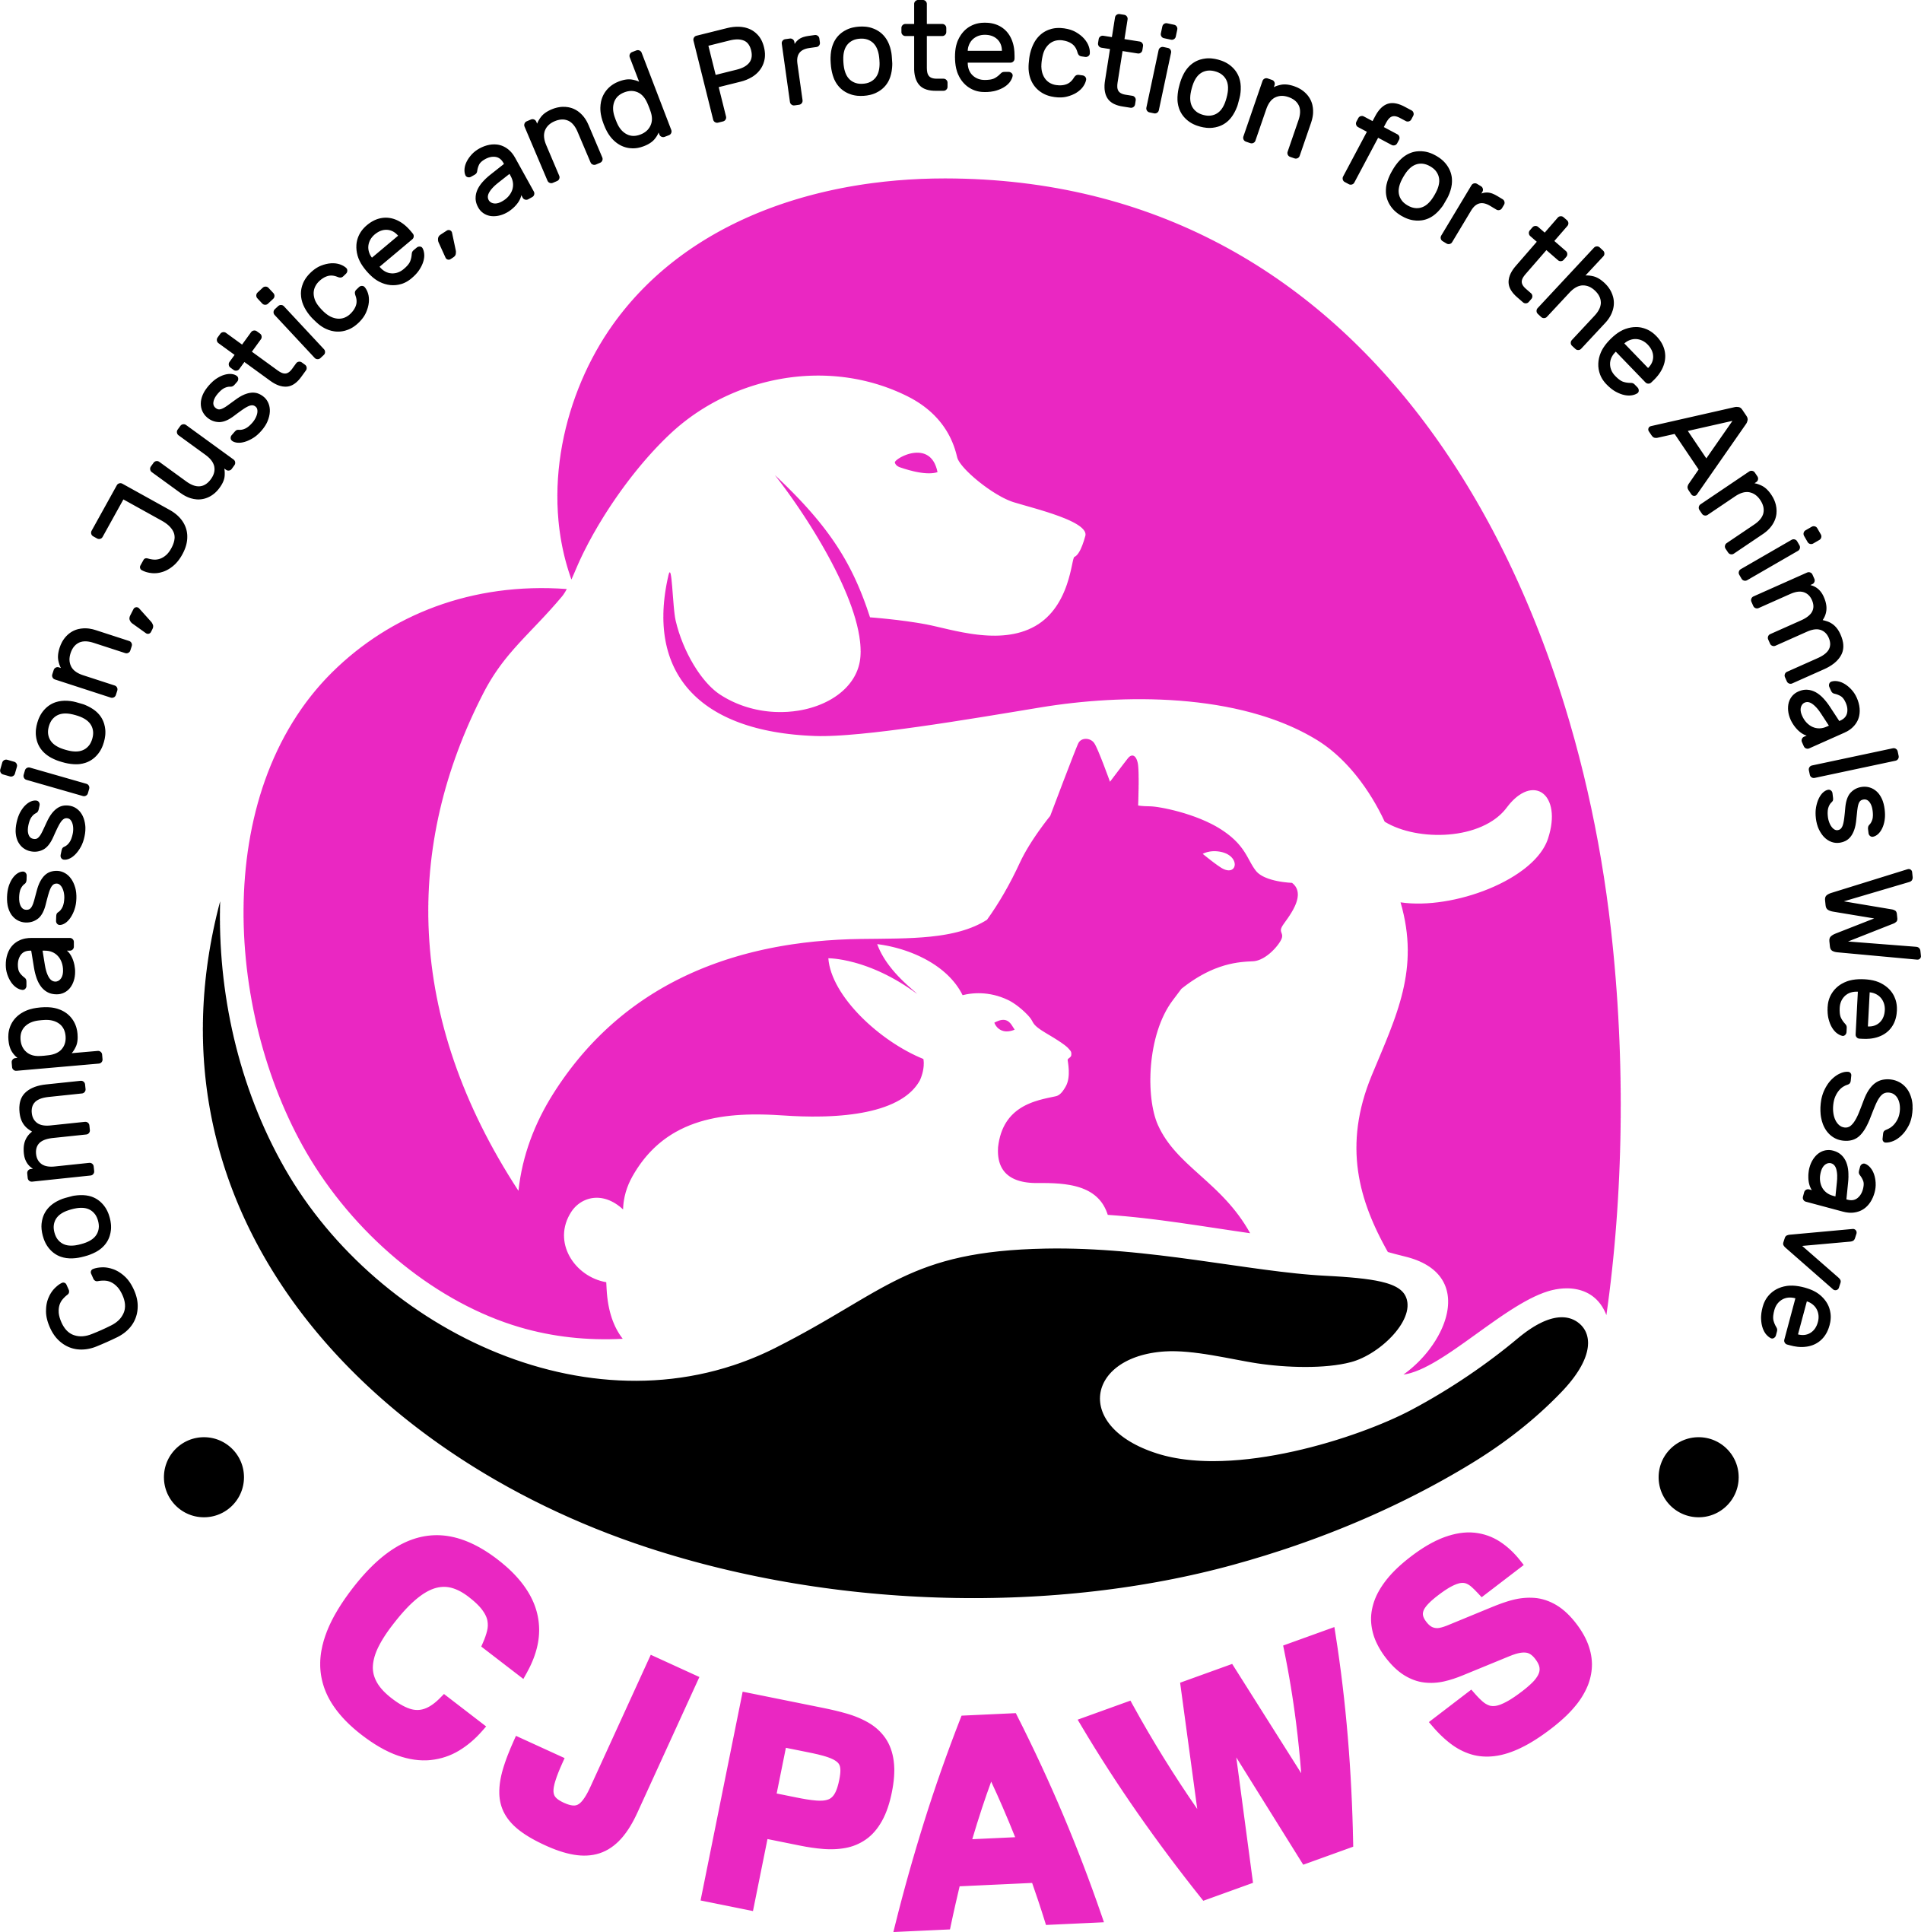 Final CJPAWS Logo PDF